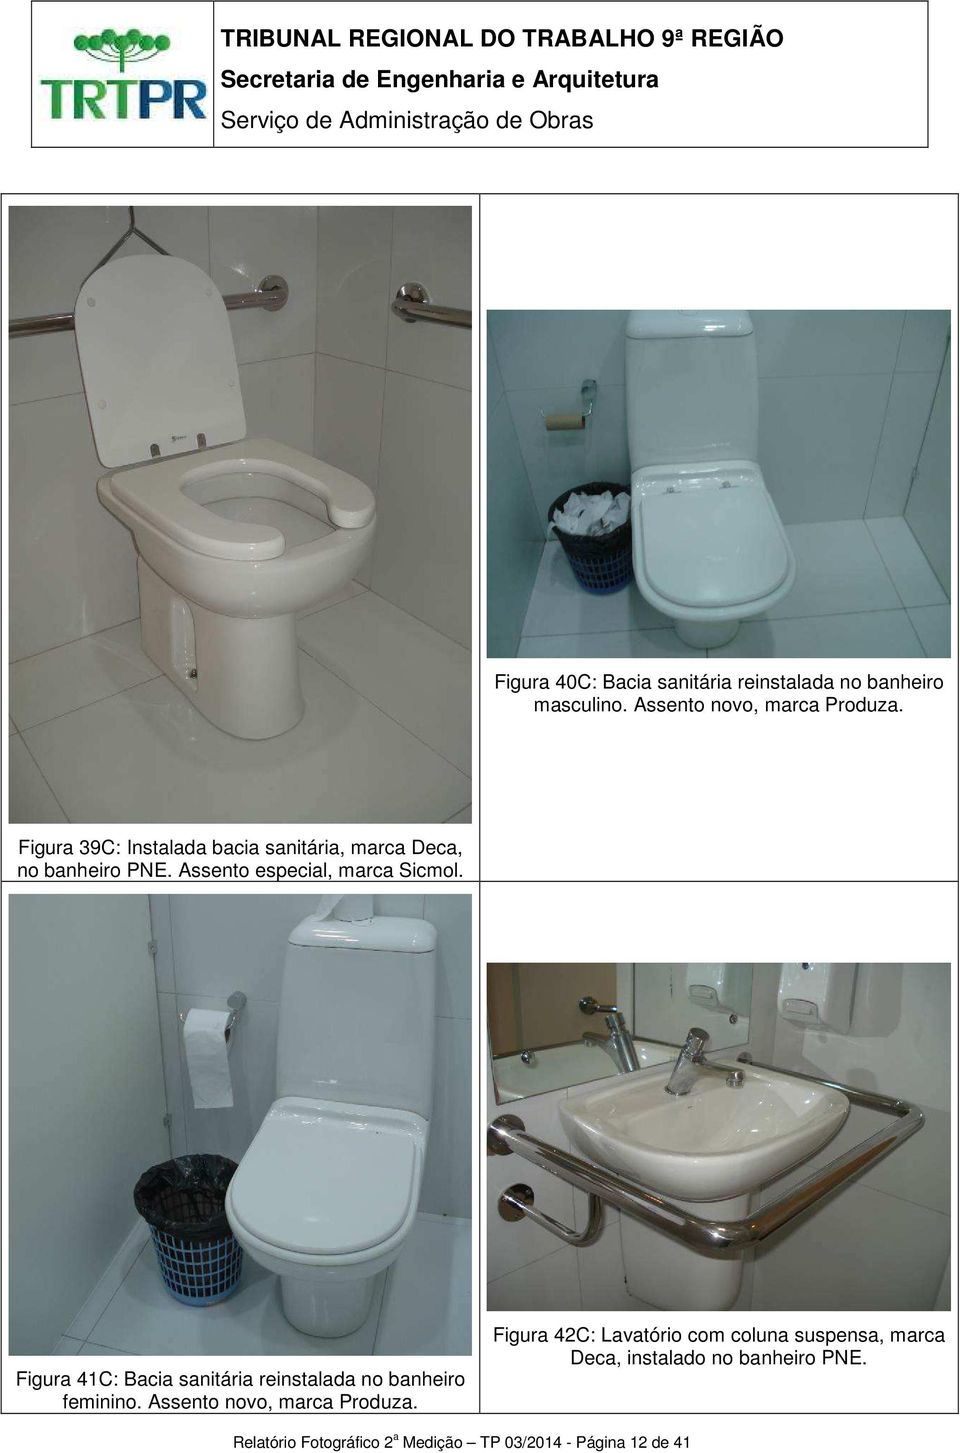 Figura 41C: Bacia sanitária reinstalada no banheiro feminino. Assento novo, marca Produza.